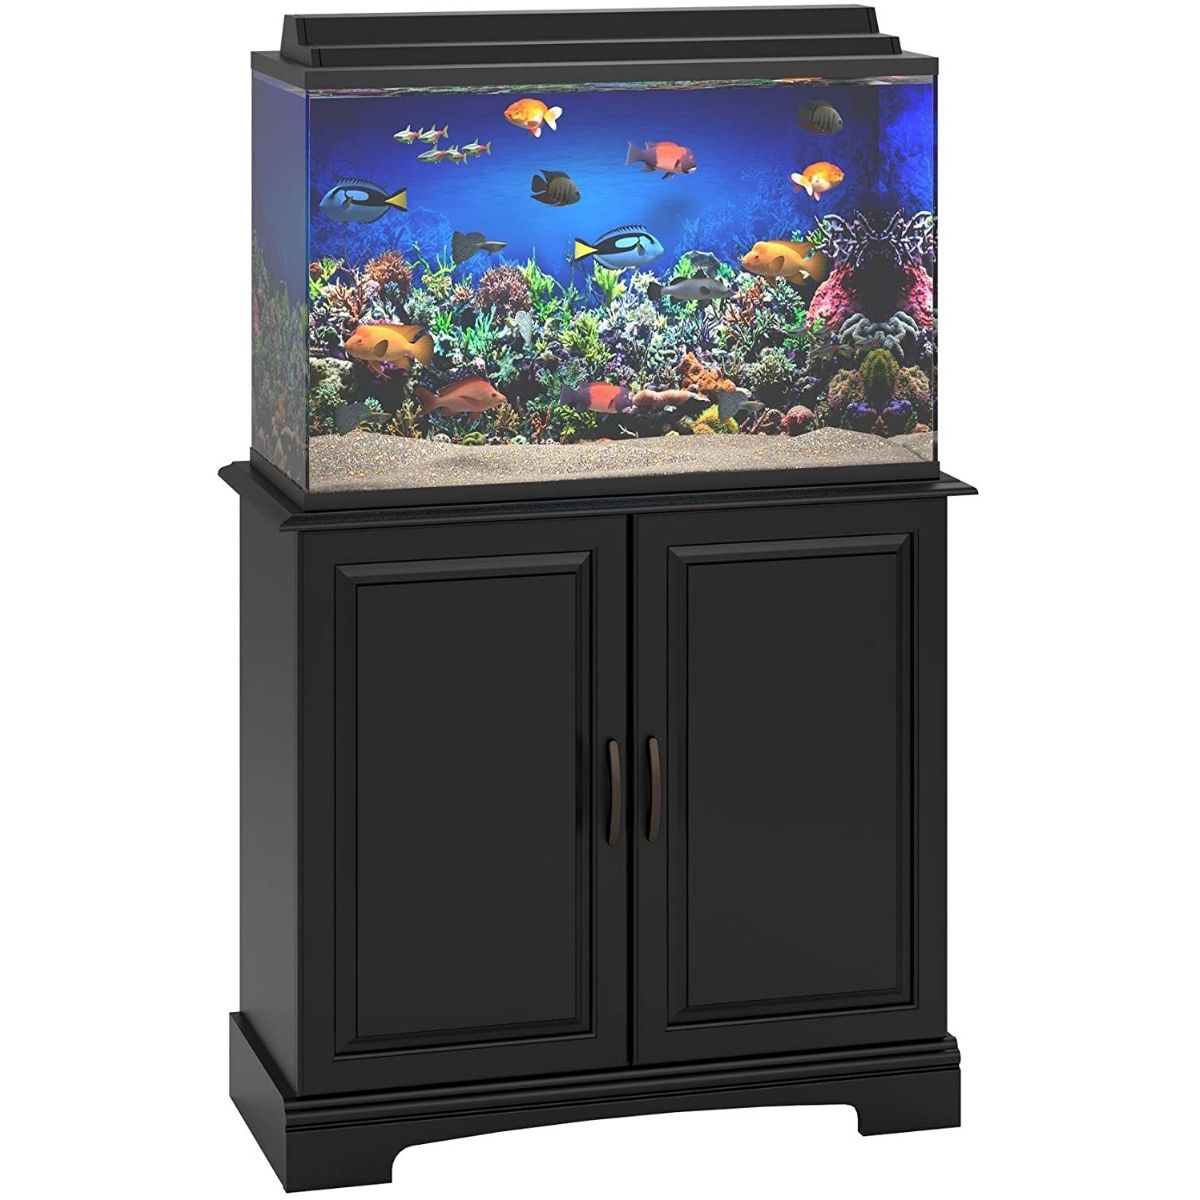 The Best 40 Gallon Aquarium Stand Option: Ameriwood Home Aquarium Stand